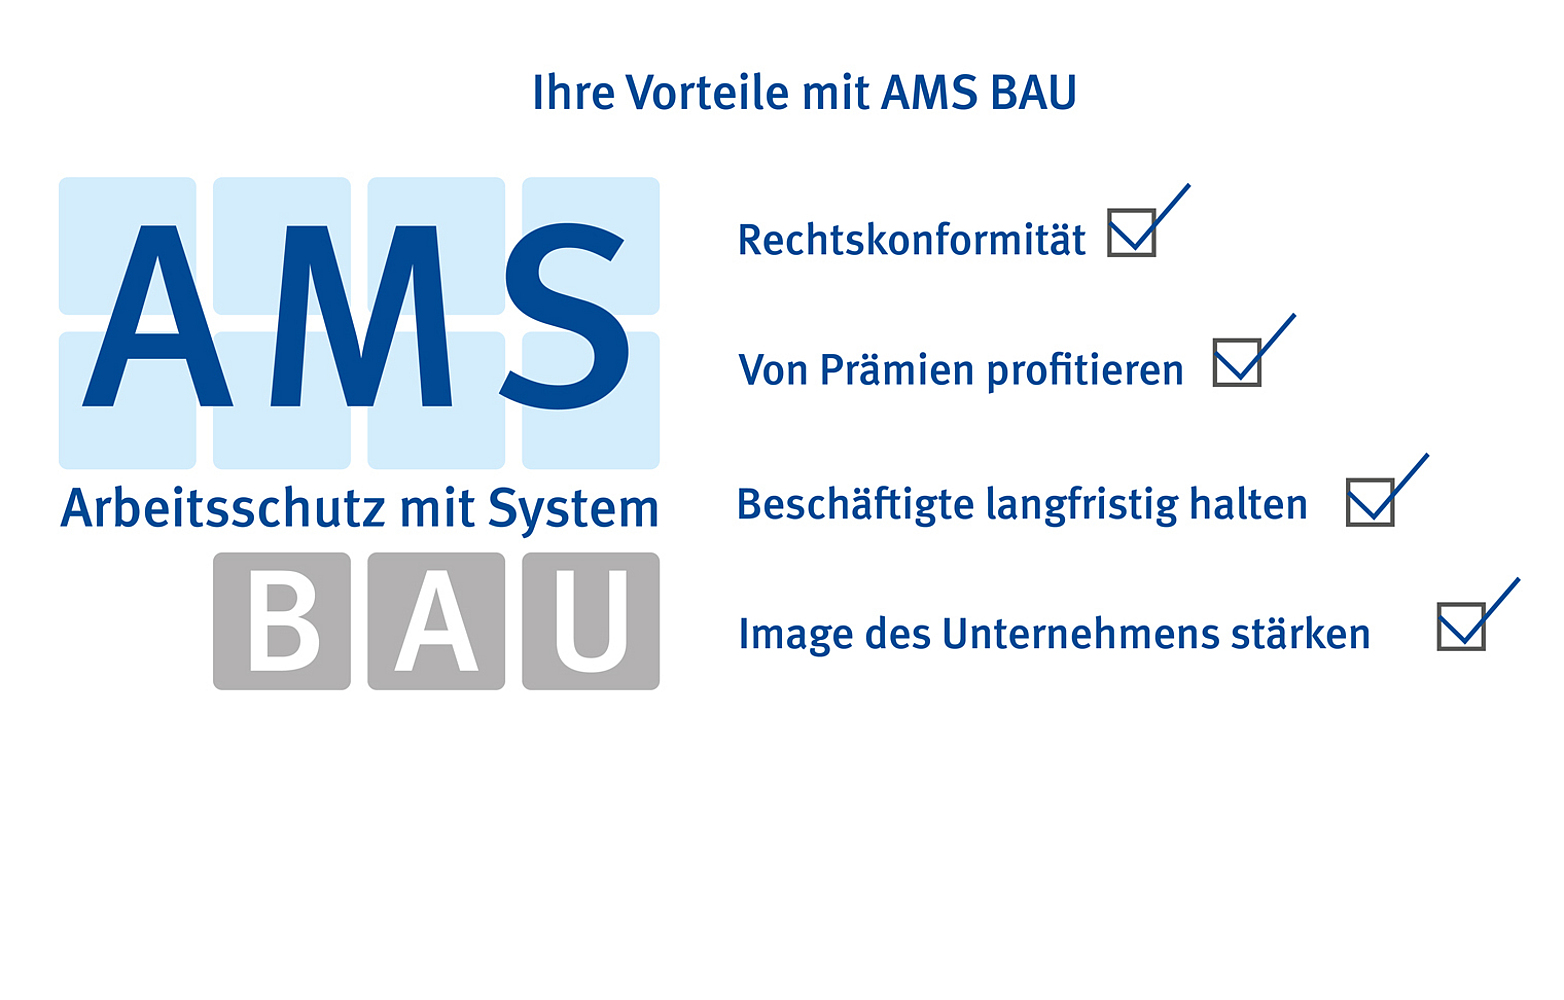 Titelibild AMS BAU-Logo mit den Vorteilen Rechtssicherheit, von Prämien profitieren, Beschäftigte langfristig halten, Image des Unternehmens stärken